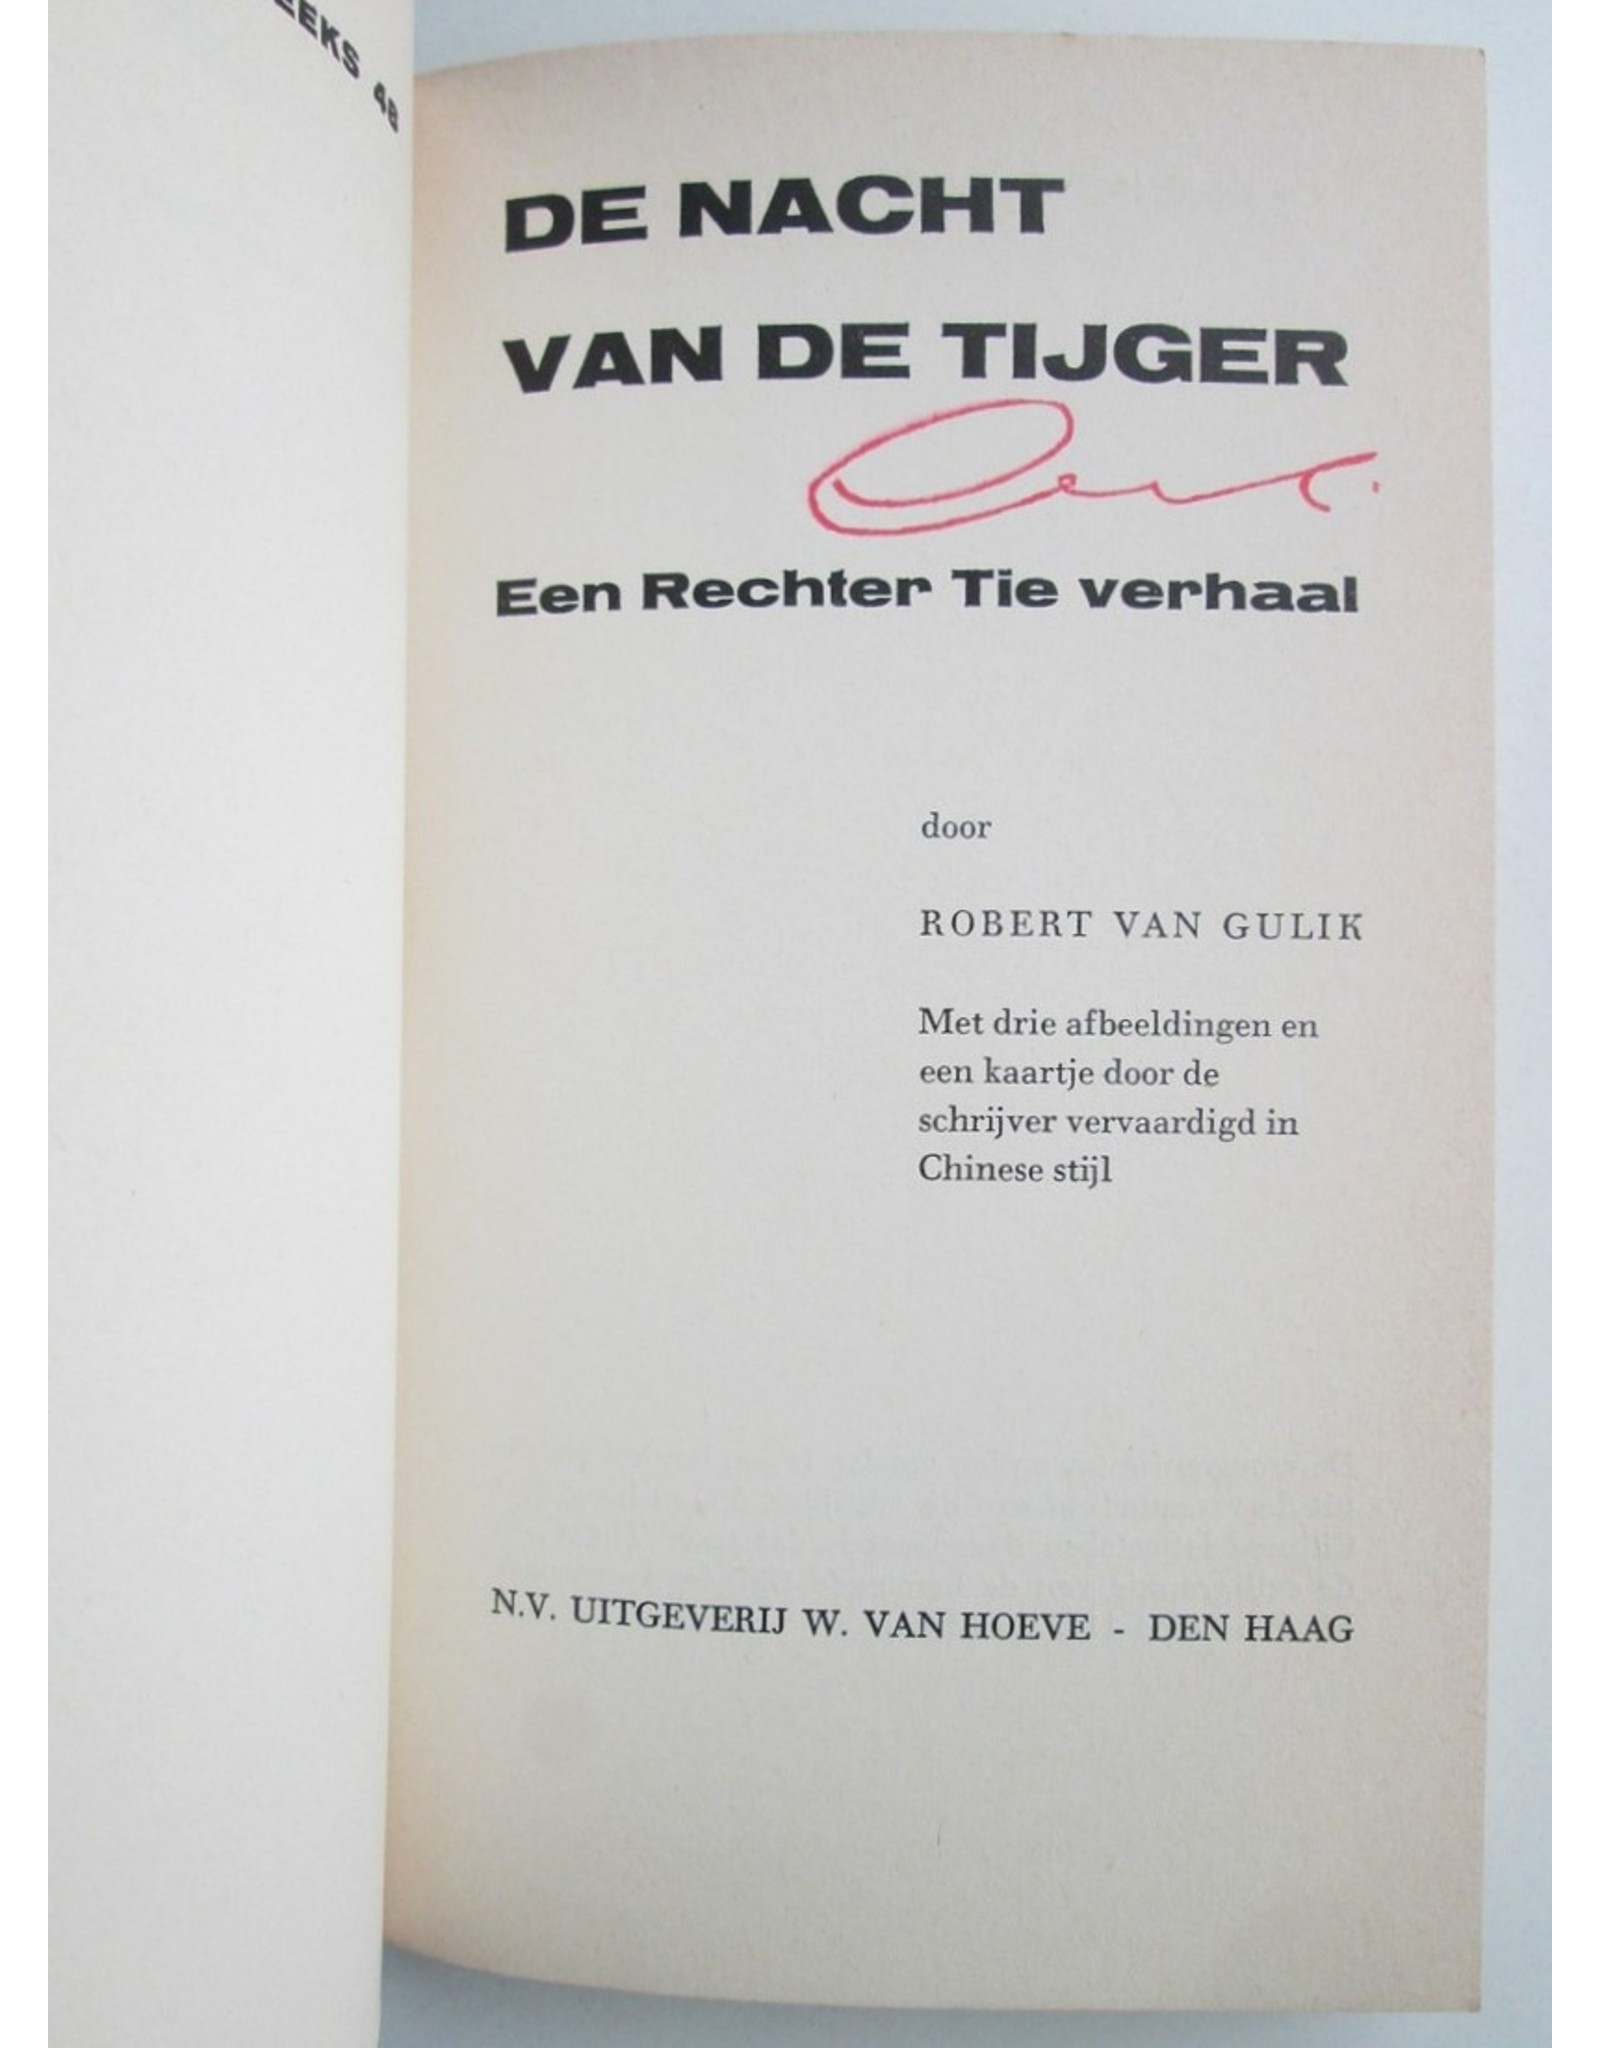 Robert van Gulik - De Nacht van de Tijger. Een Rechter Tie verhaal. Met drie afbeeldingen en een kaartje door de schrijver vervaardigd [...]